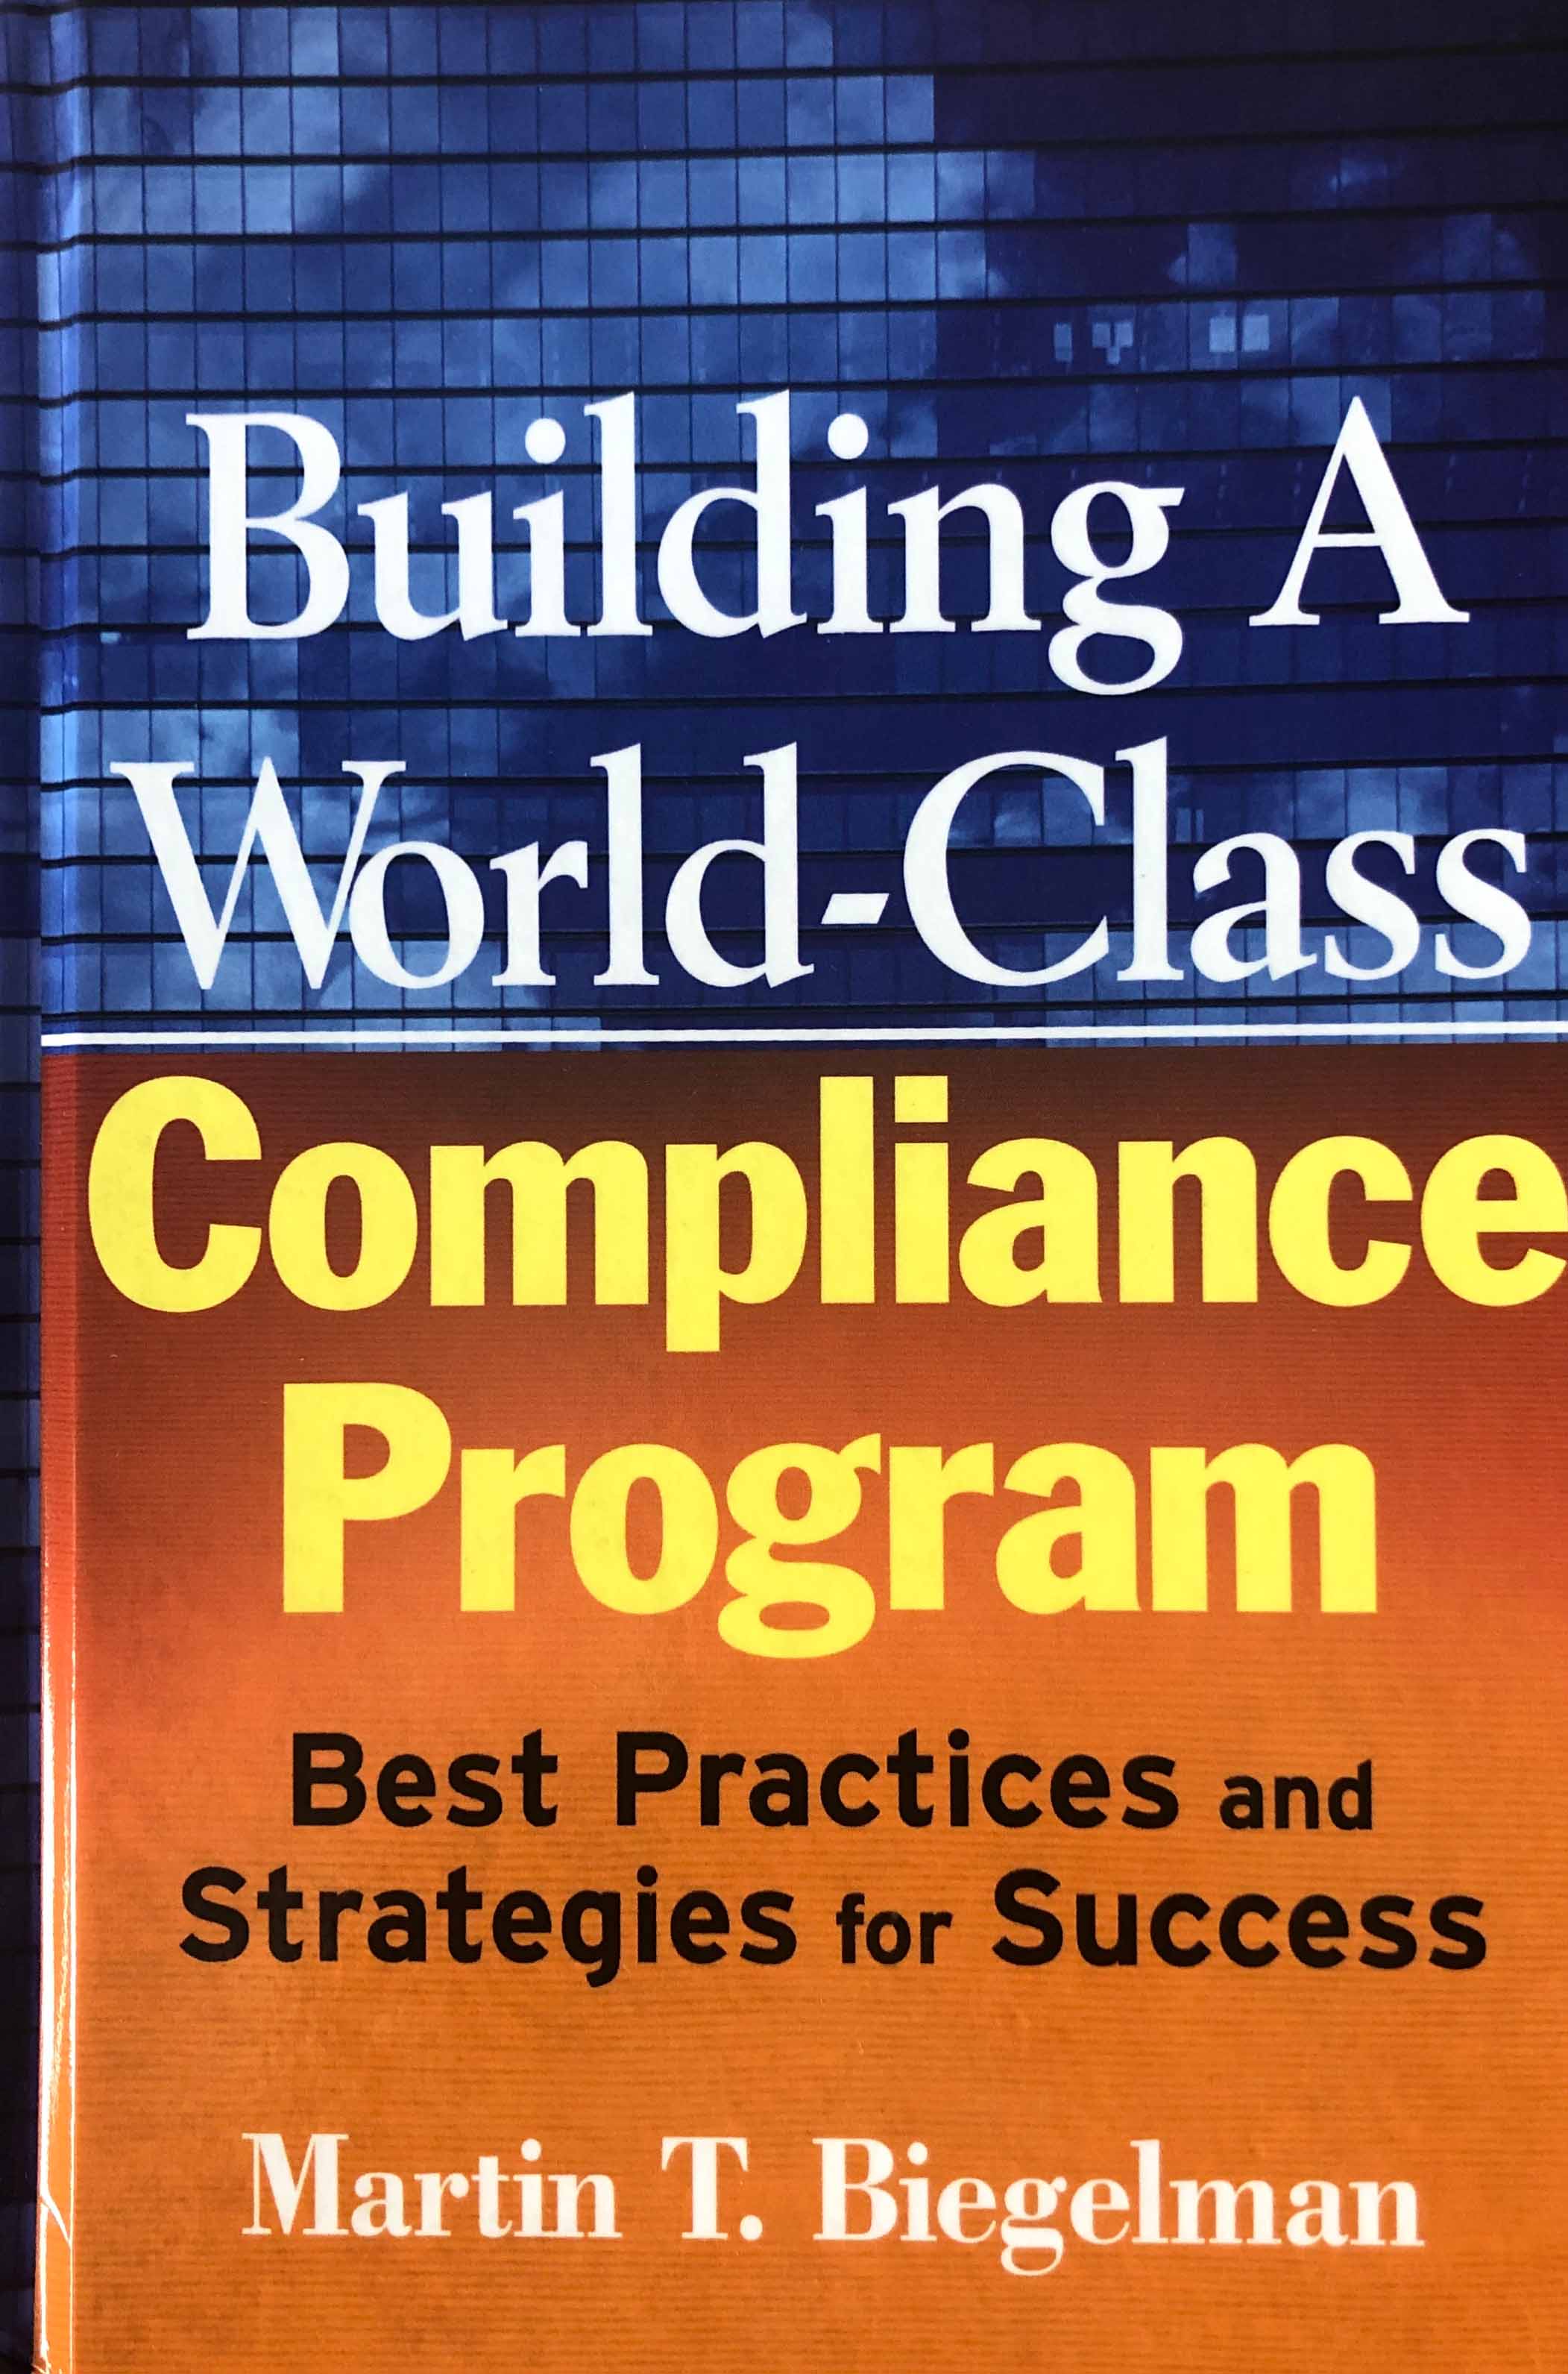 Description Building a World-Class Compliance Program: Best Practices & Strategies for Success